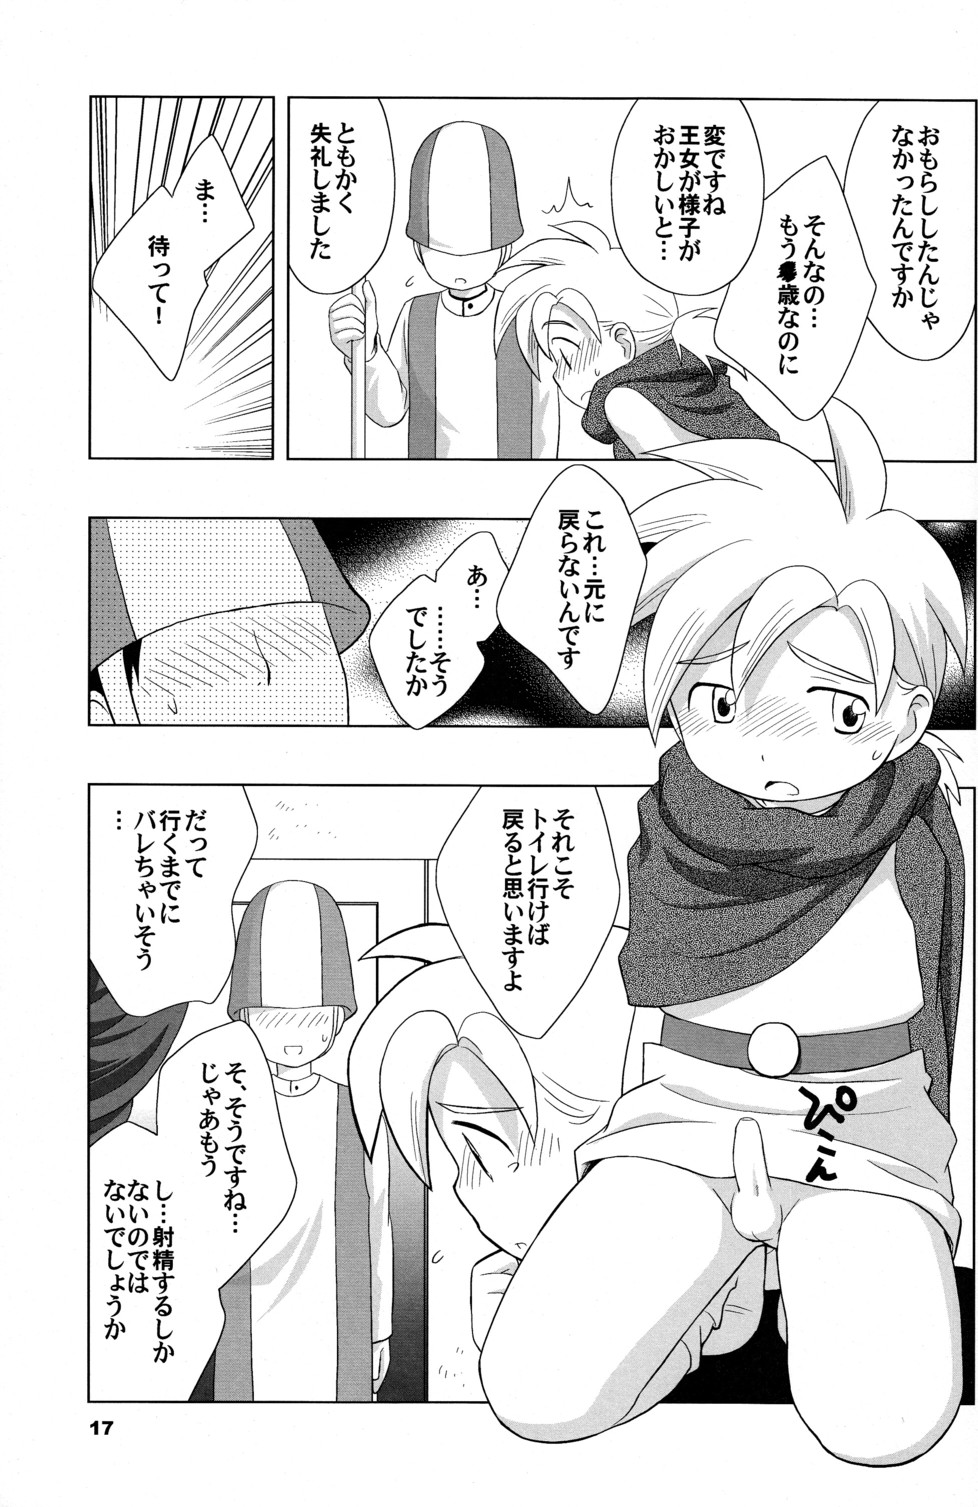 (Shotaket 10) [Tokuda (Ueda Yuu)] Hoshifuru Seisui (Dragon Quest V) page 17 full